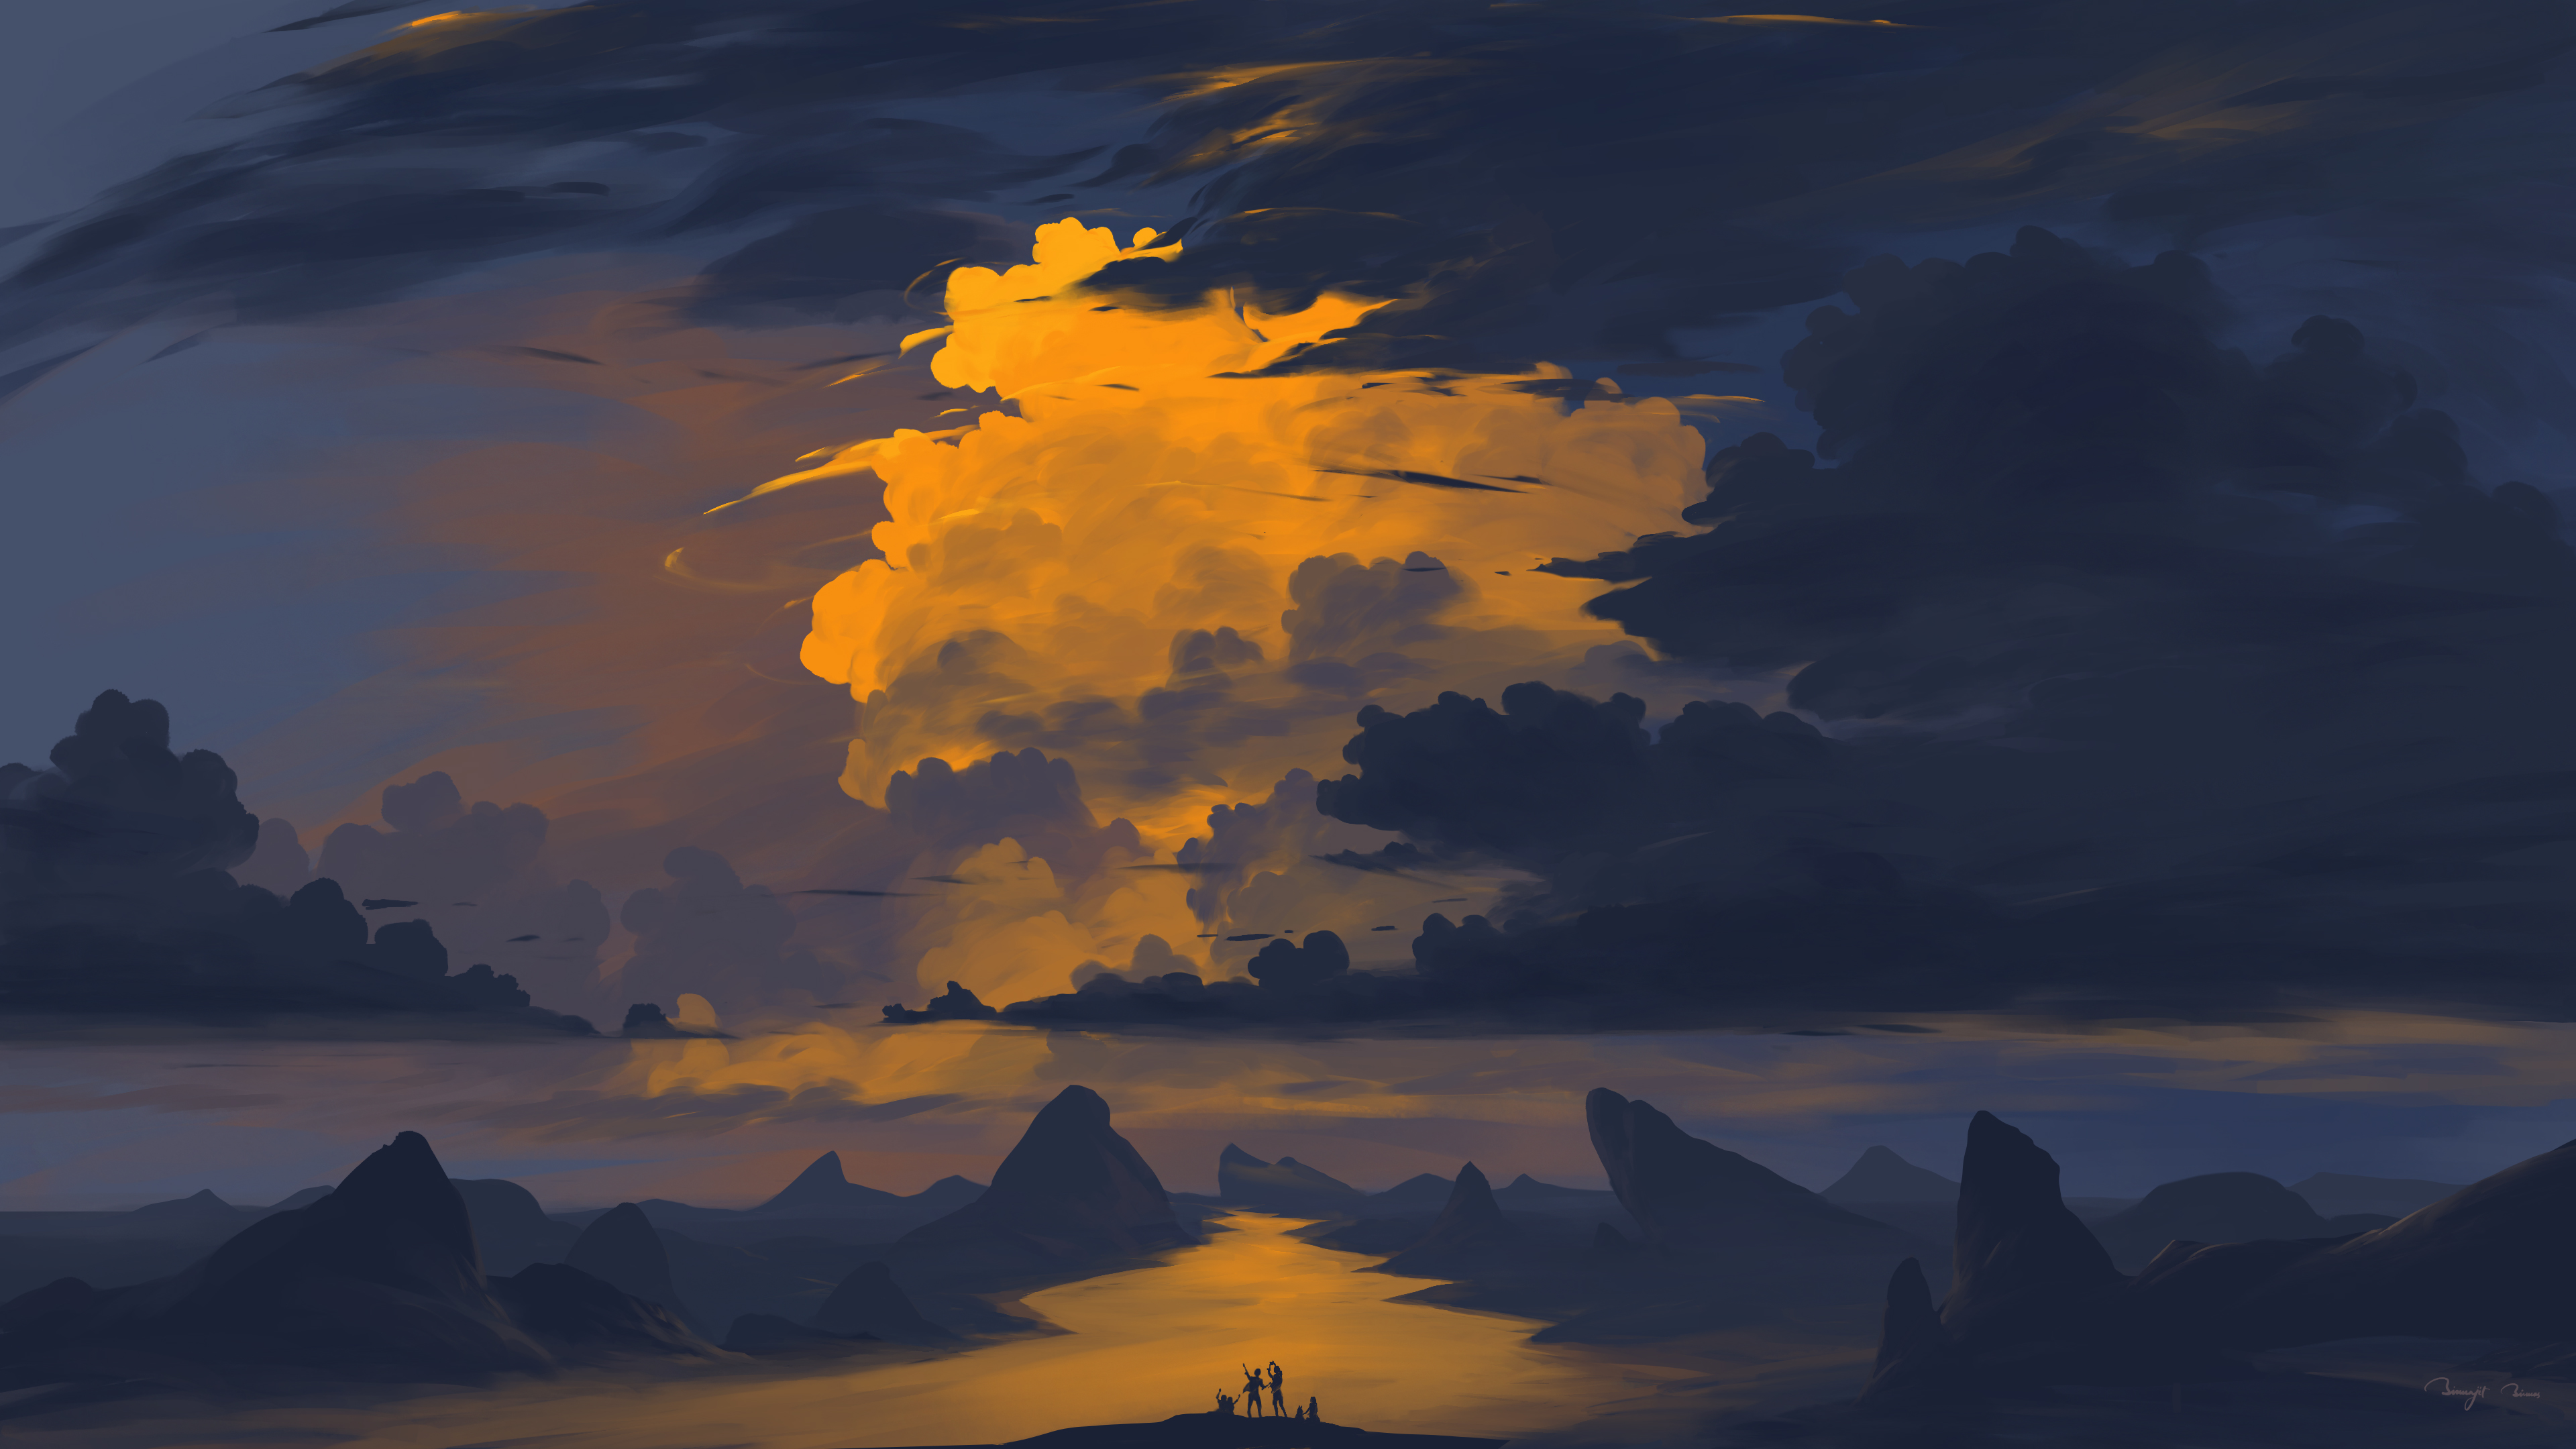 BisBiswas Digital Art Artwork Illustration Landscape Clouds Sunset Sky Mountains River Group Of Peop 3840x2160